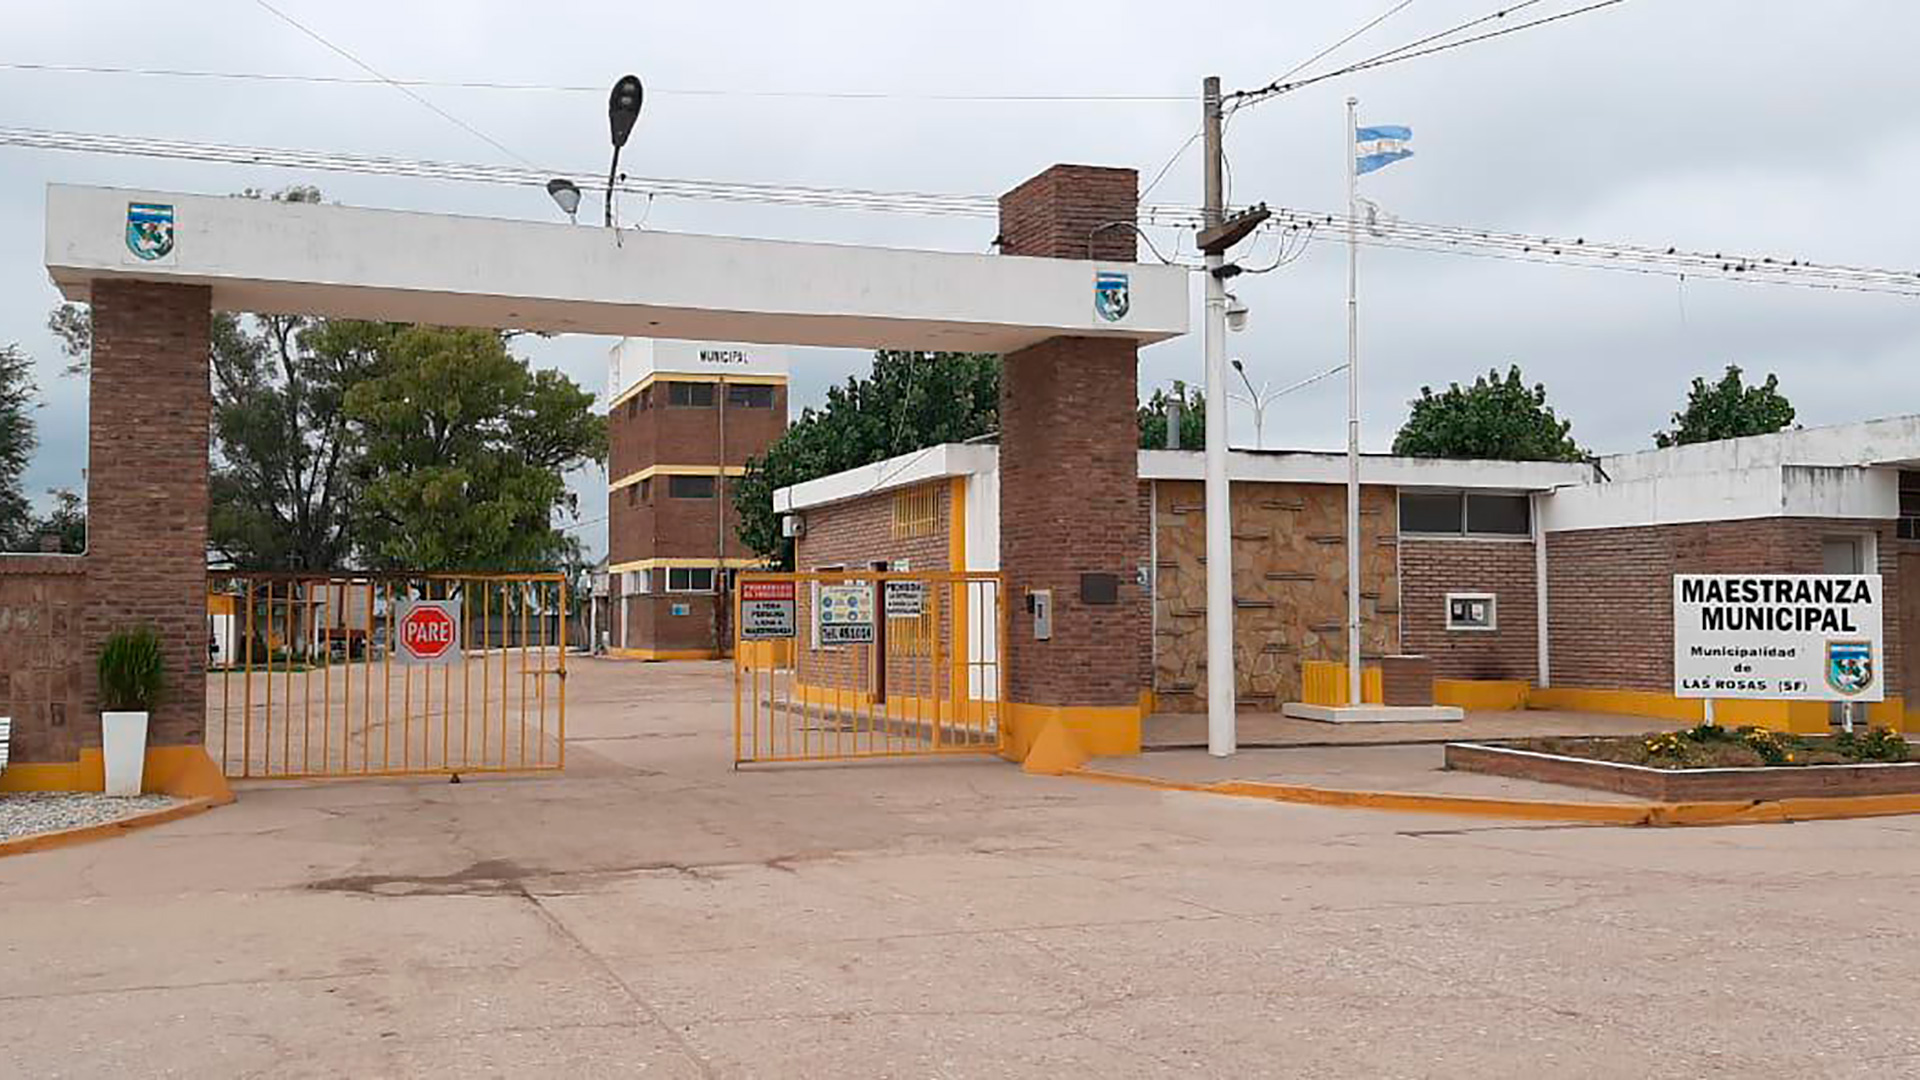 El bloqueo a la sede de maestranza de la Municipalidad de Las Rosas paralizó la obra pública y la recolección de residuos